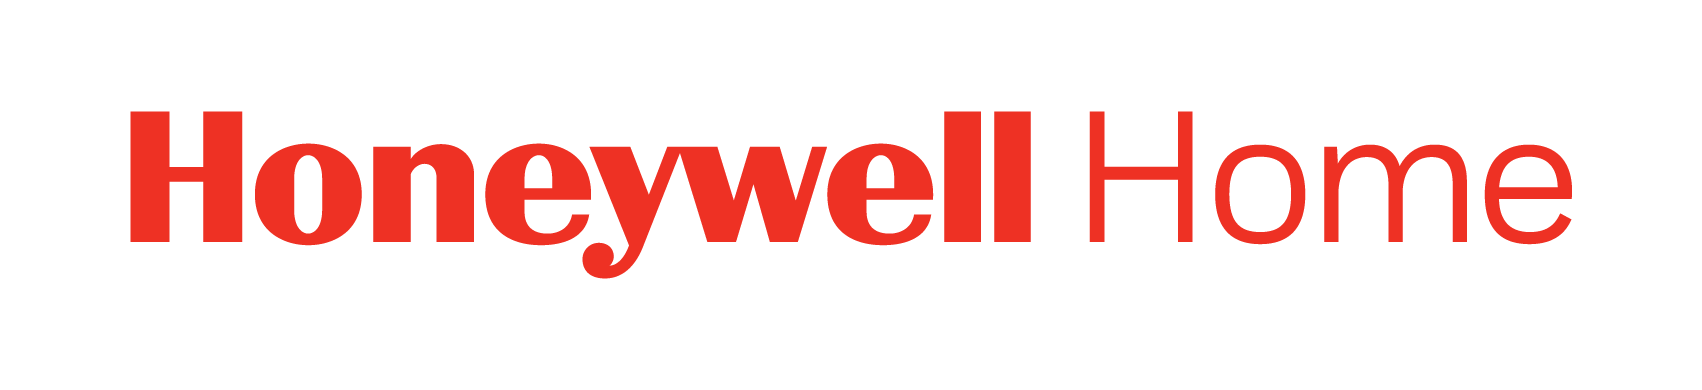 Honeywell Home SRP logo